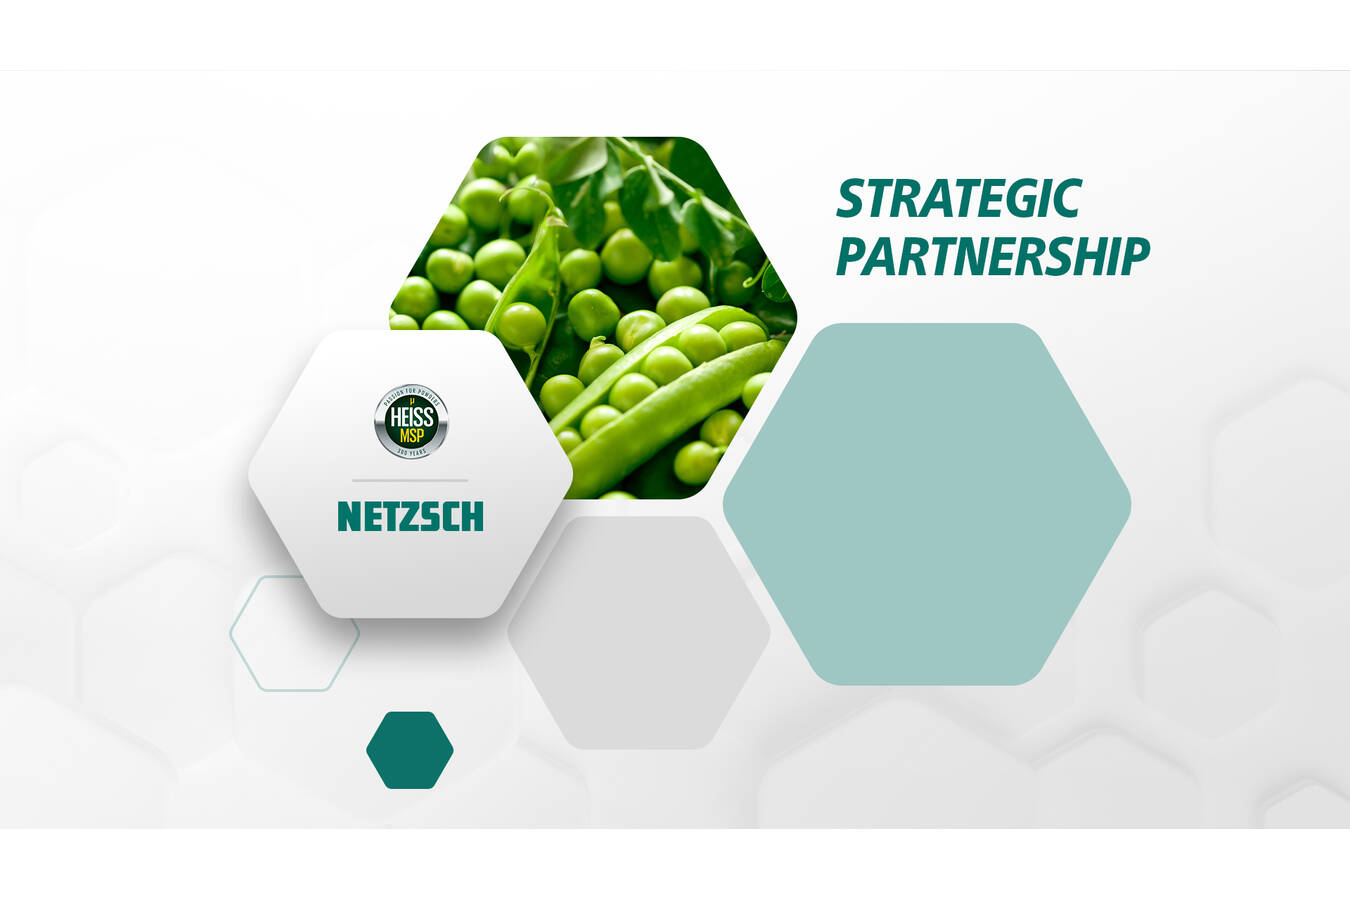 NETZSCH G&D and Heiss MSP sign cooperation agreement